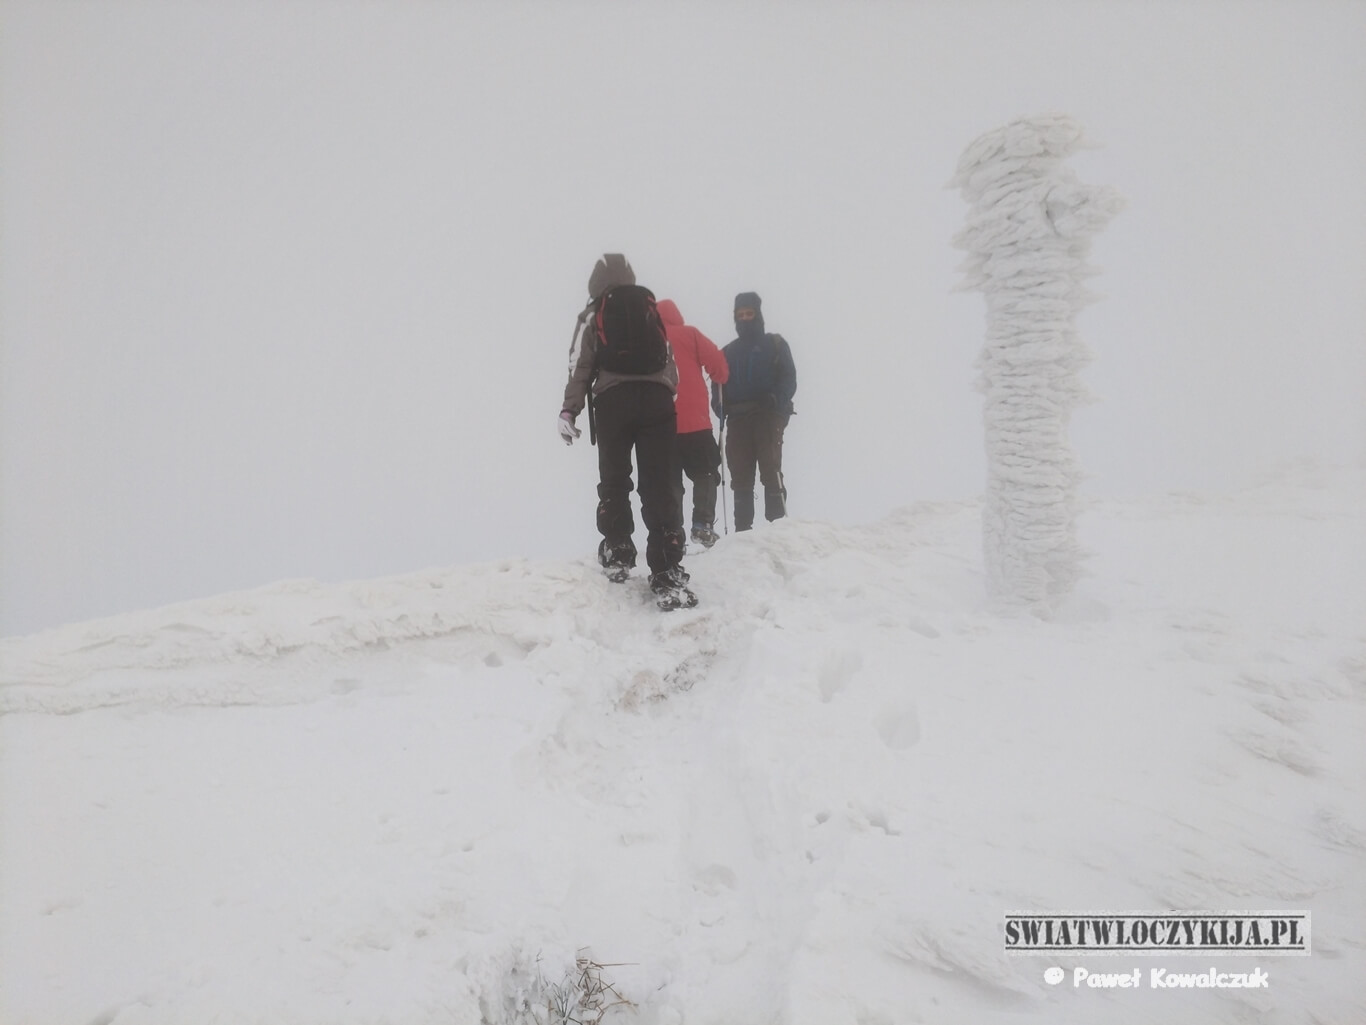 Połonina caryńska w gęstej mgle i śniegu. Na zdjęciu oblodzony słupek i grupka ludzi brnących w śniegu.